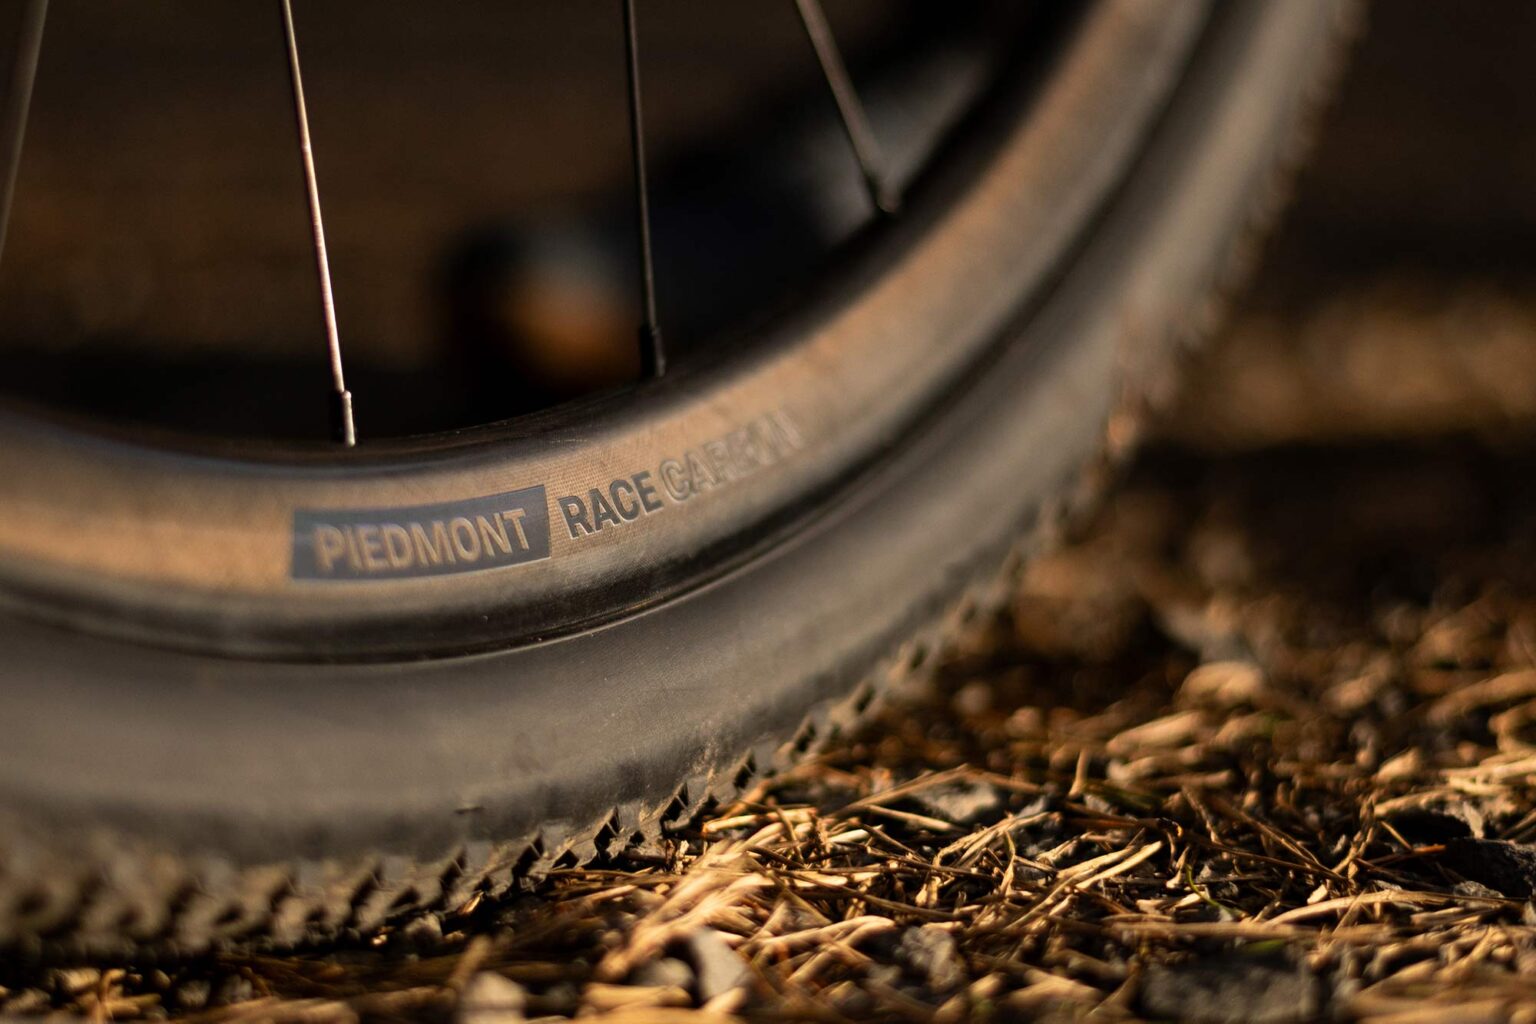 eThirteen Piedmont gravel race wheels